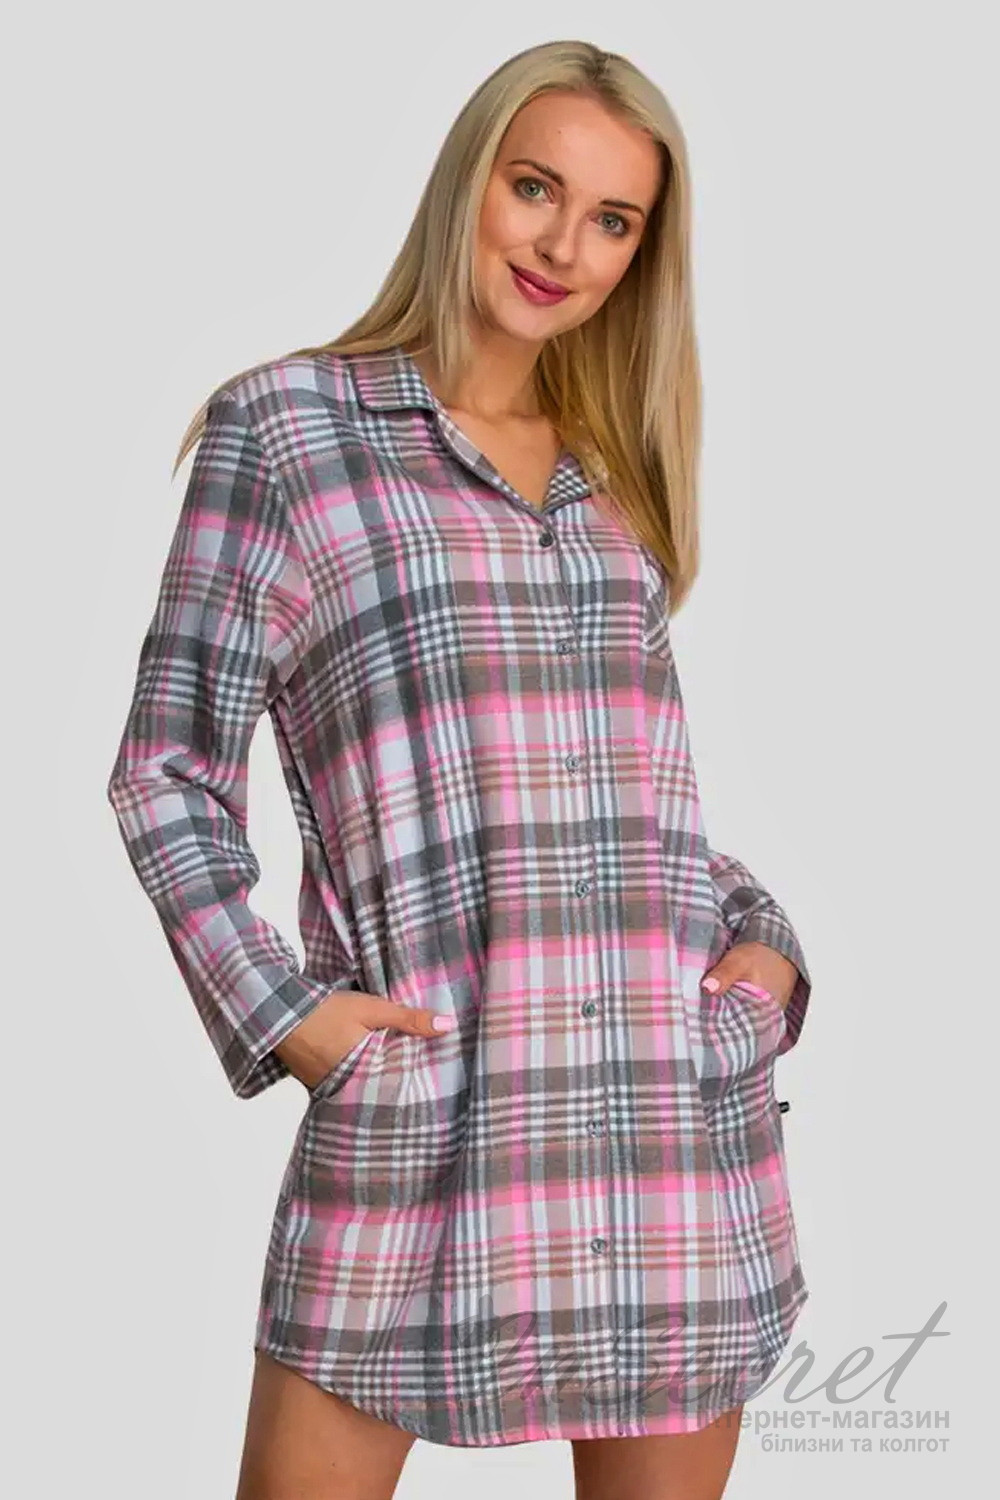 Женские платья-рубашки в клетку — купить в интернет-магазине Ламода